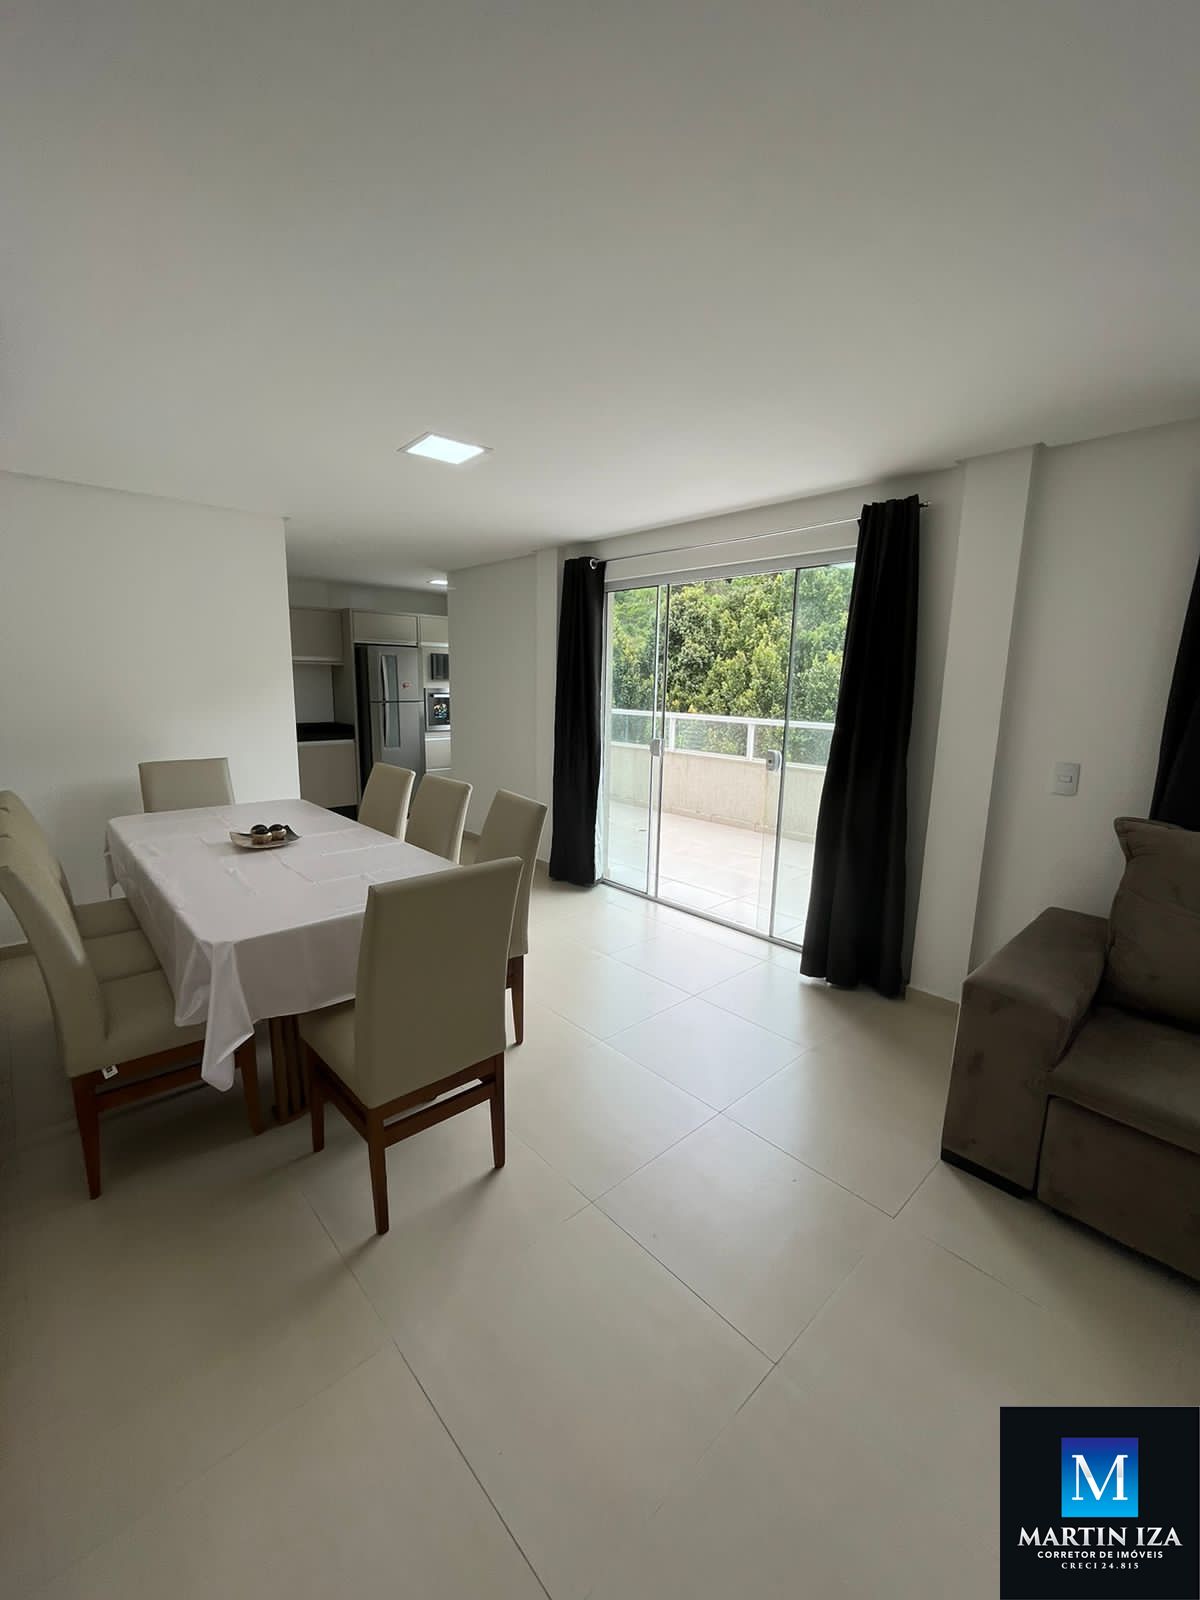 Cobertura com 3 Dormitórios à venda, 170 m² por R$ 1.200.000,00